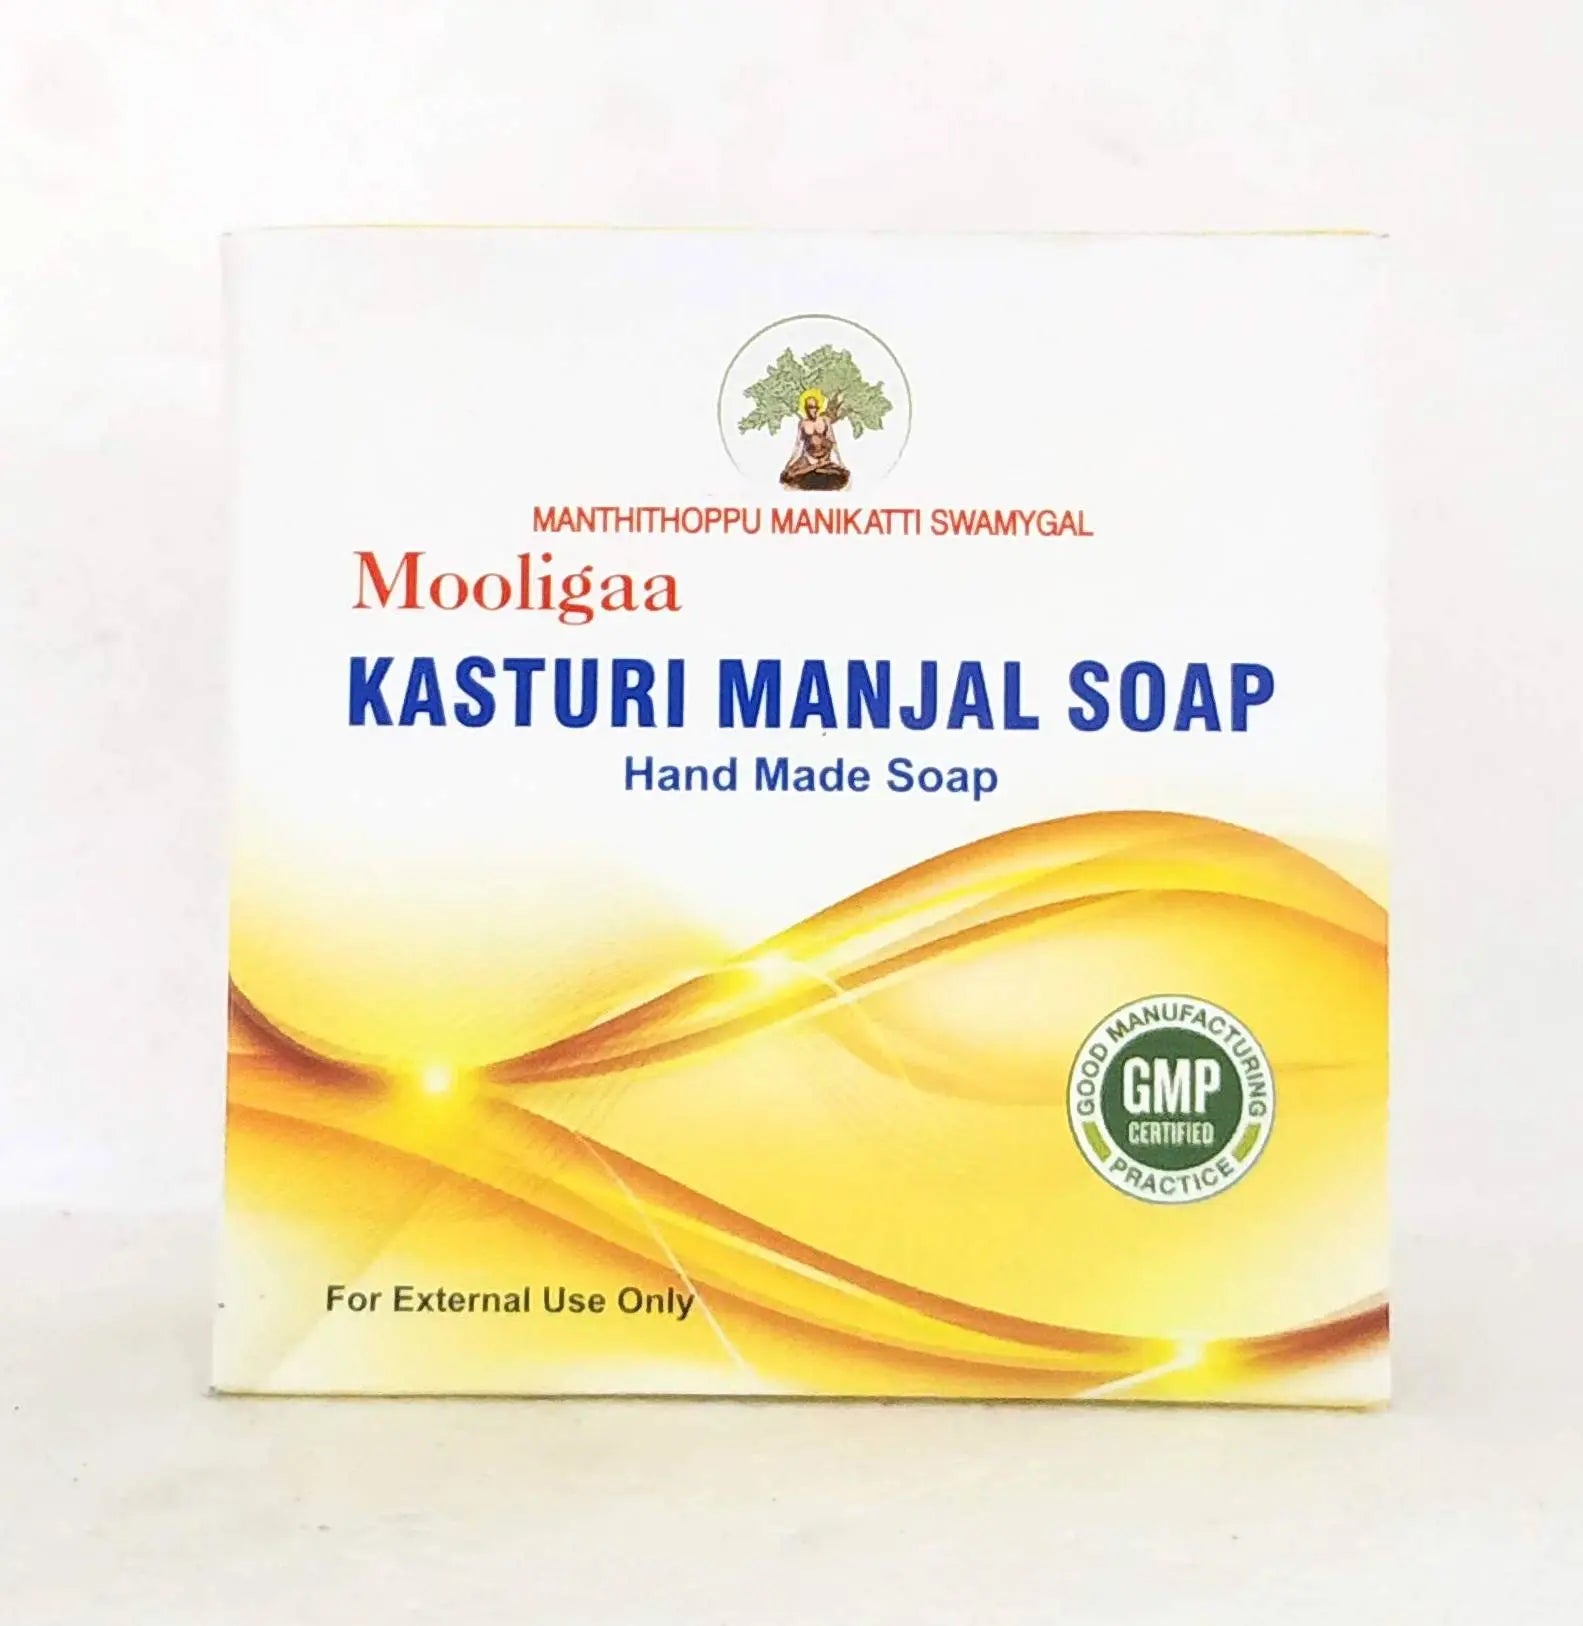 Mooliga kasthuri manjal soap 75gm Manthithoppu